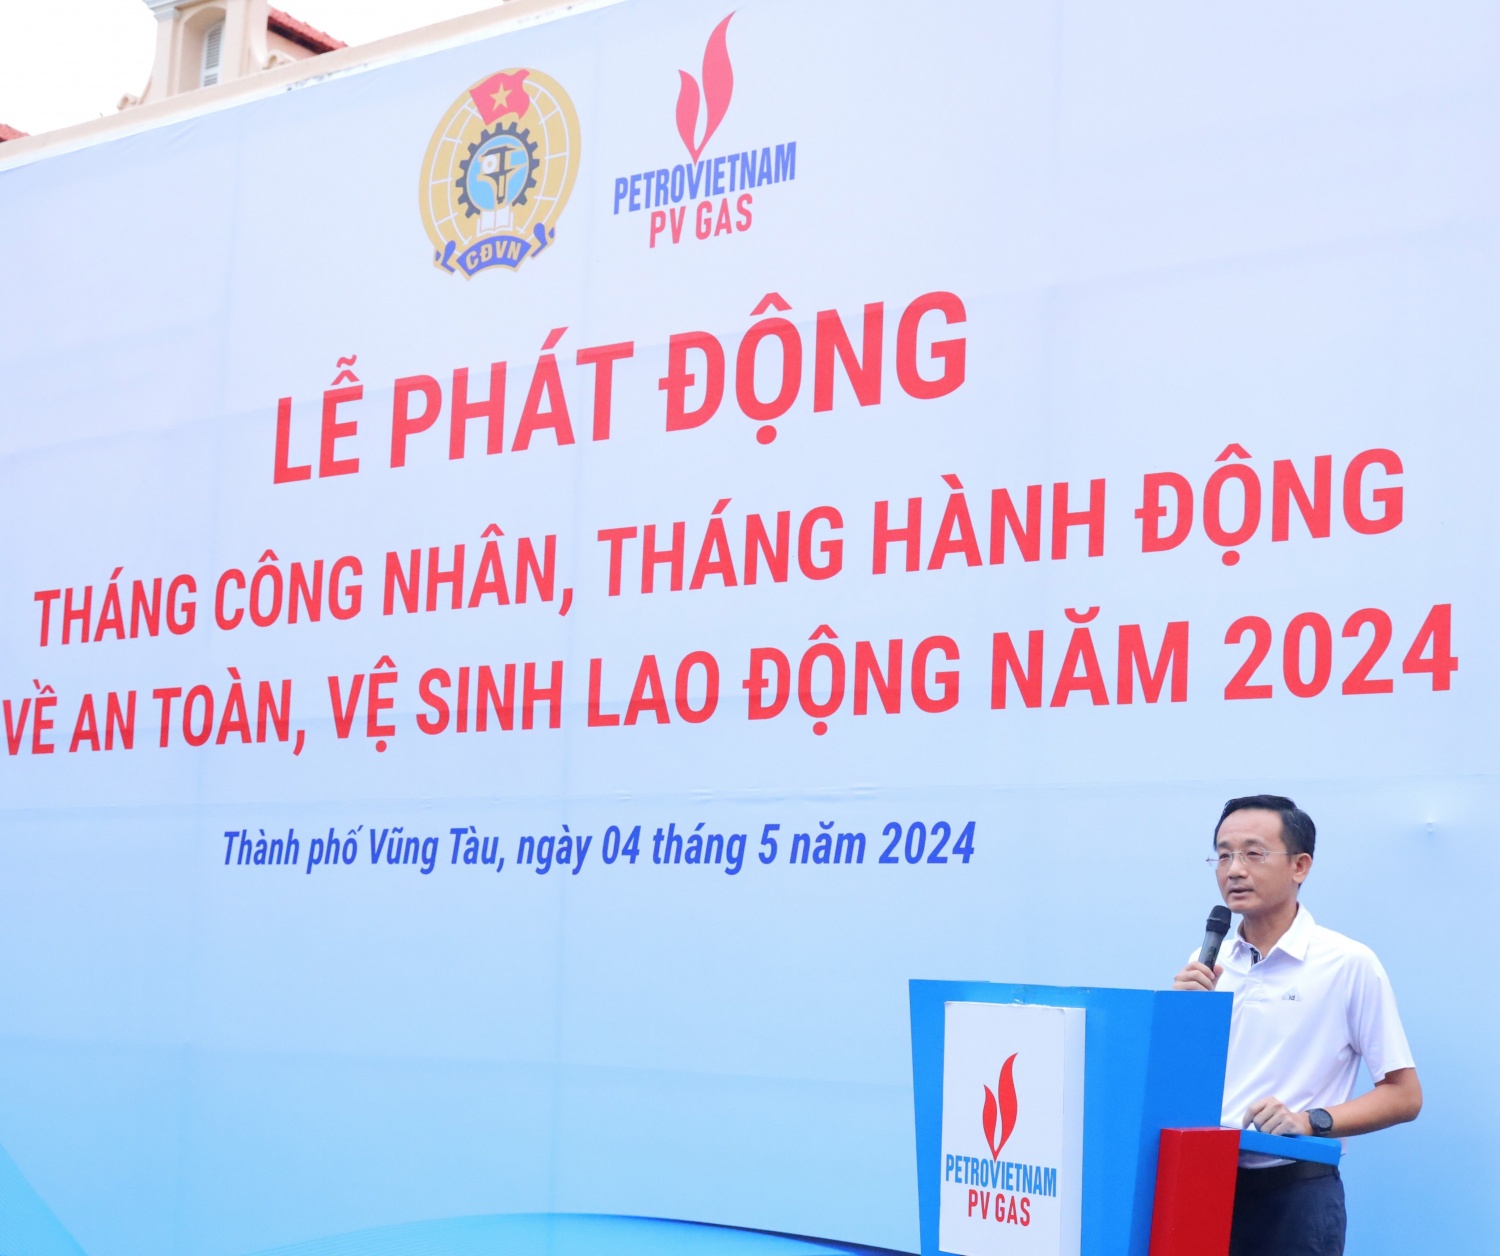 Phó Tổng Giám đốc PV GAS Trần Nhật Huy phát biểu tại buổi lễ